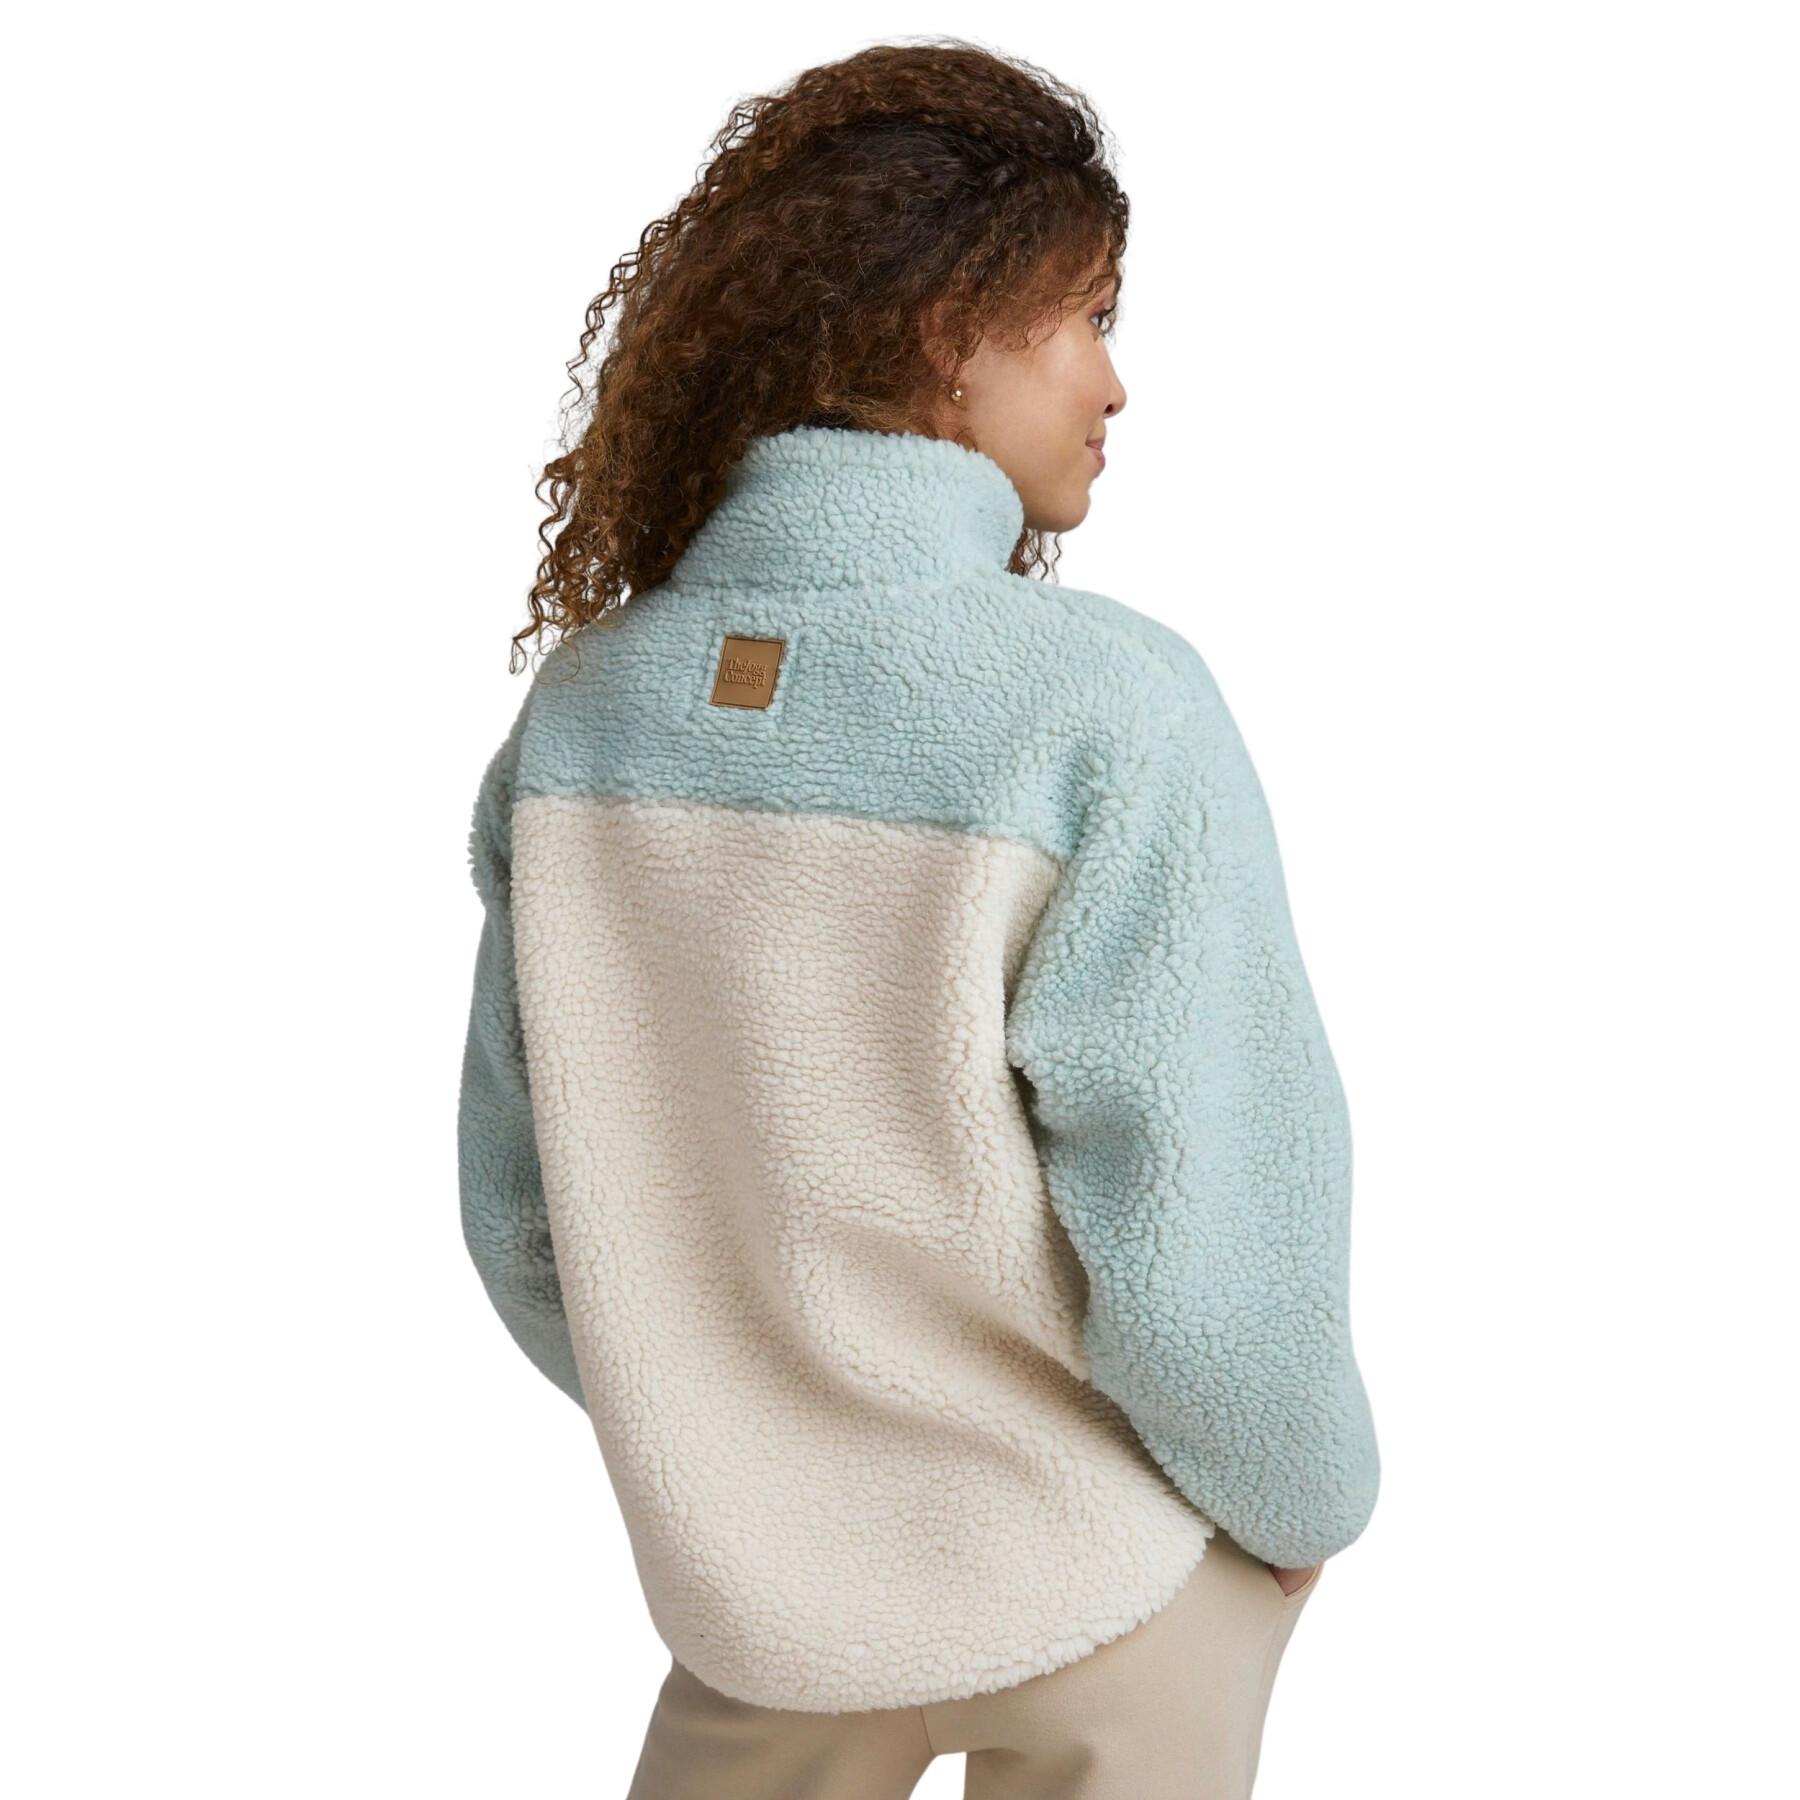 Women's half-zip fleece with long sleeves TheJoggConcept Jcberri